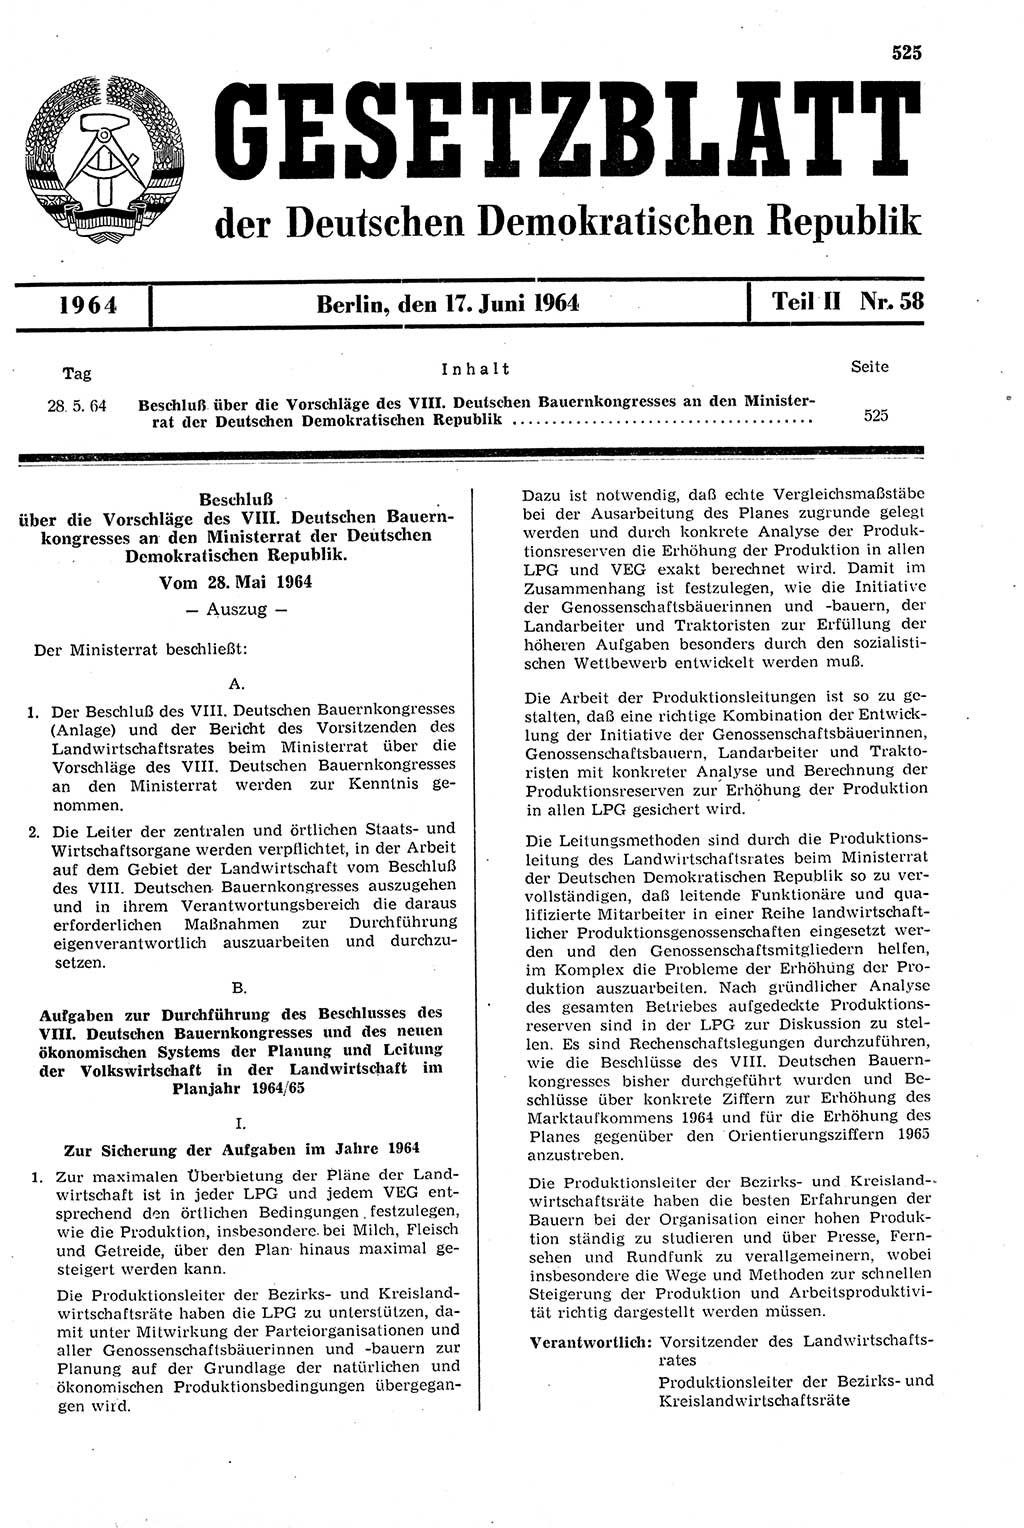 Gesetzblatt (GBl.) der Deutschen Demokratischen Republik (DDR) Teil ⅠⅠ 1964, Seite 525 (GBl. DDR ⅠⅠ 1964, S. 525)